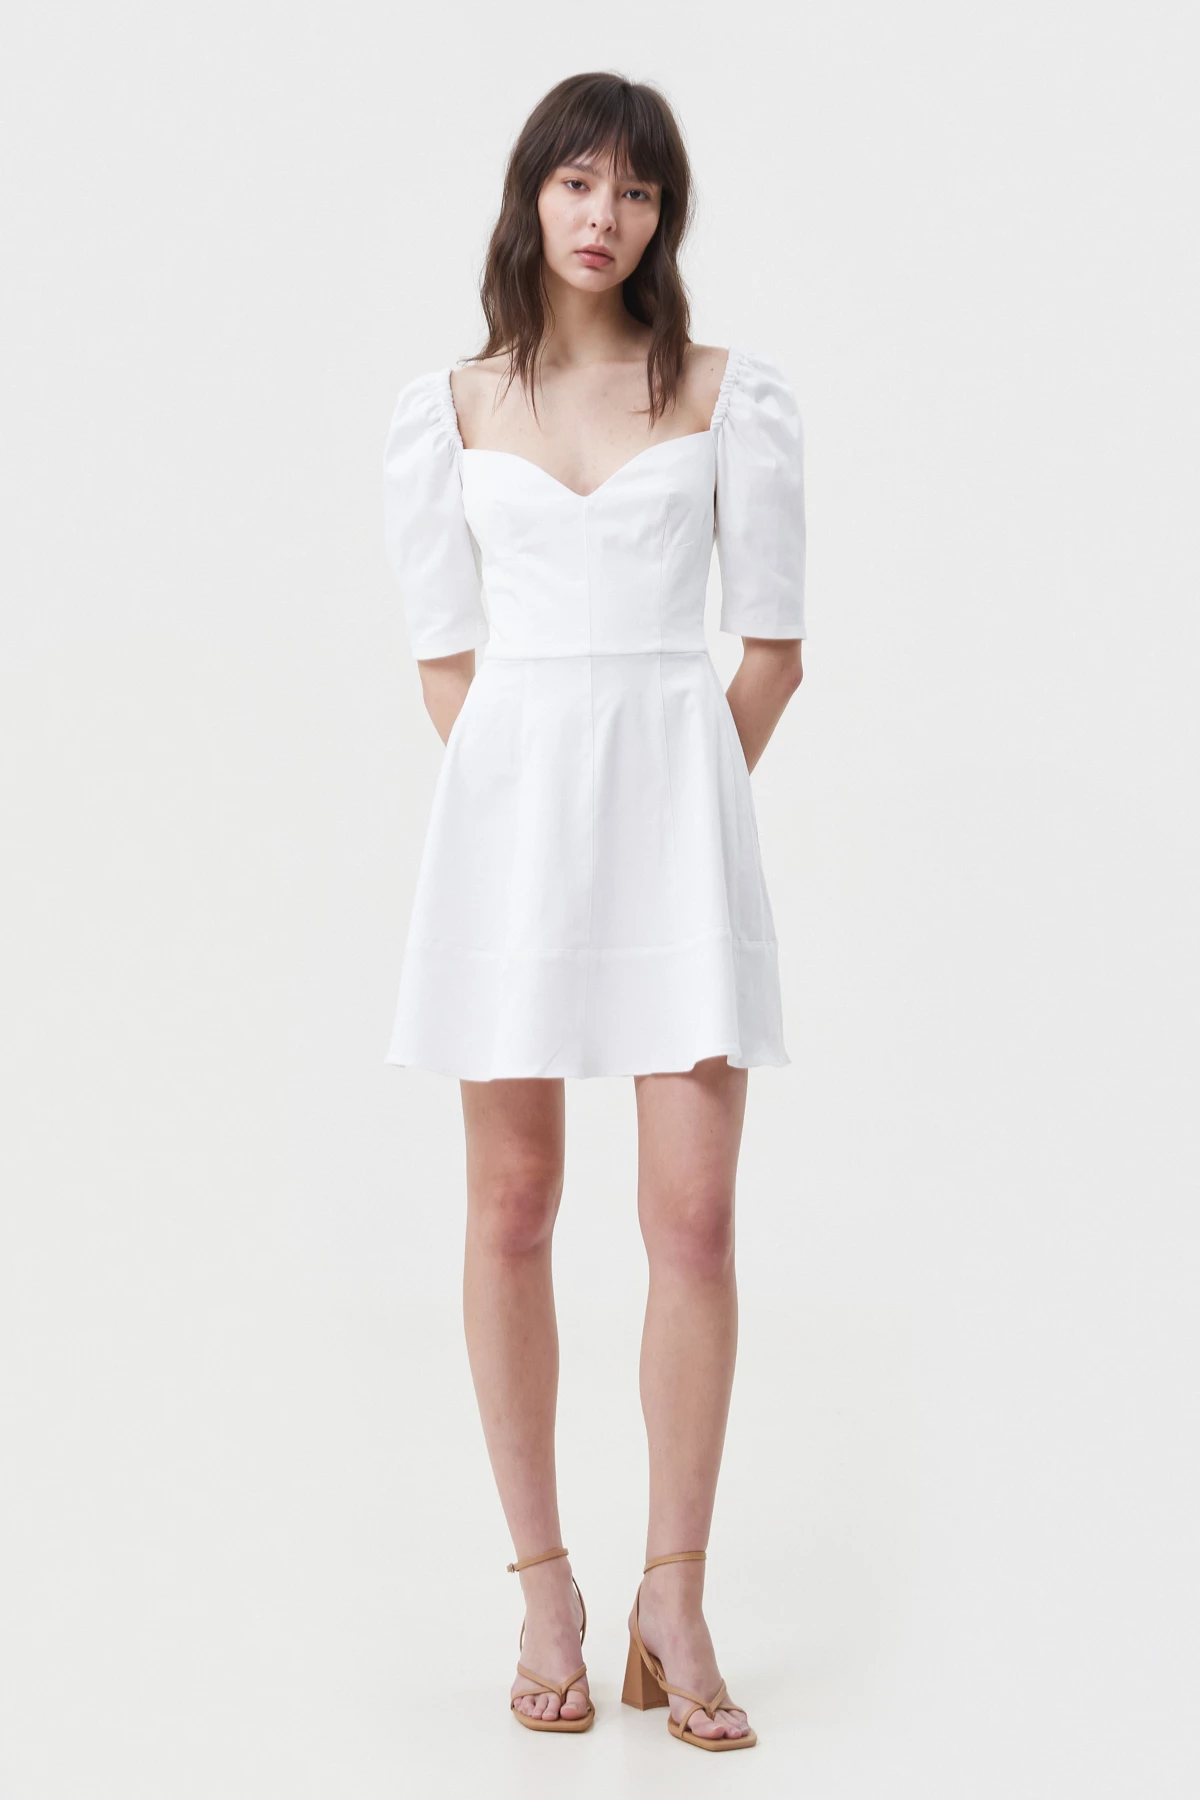 White short cotton dress, photo 2